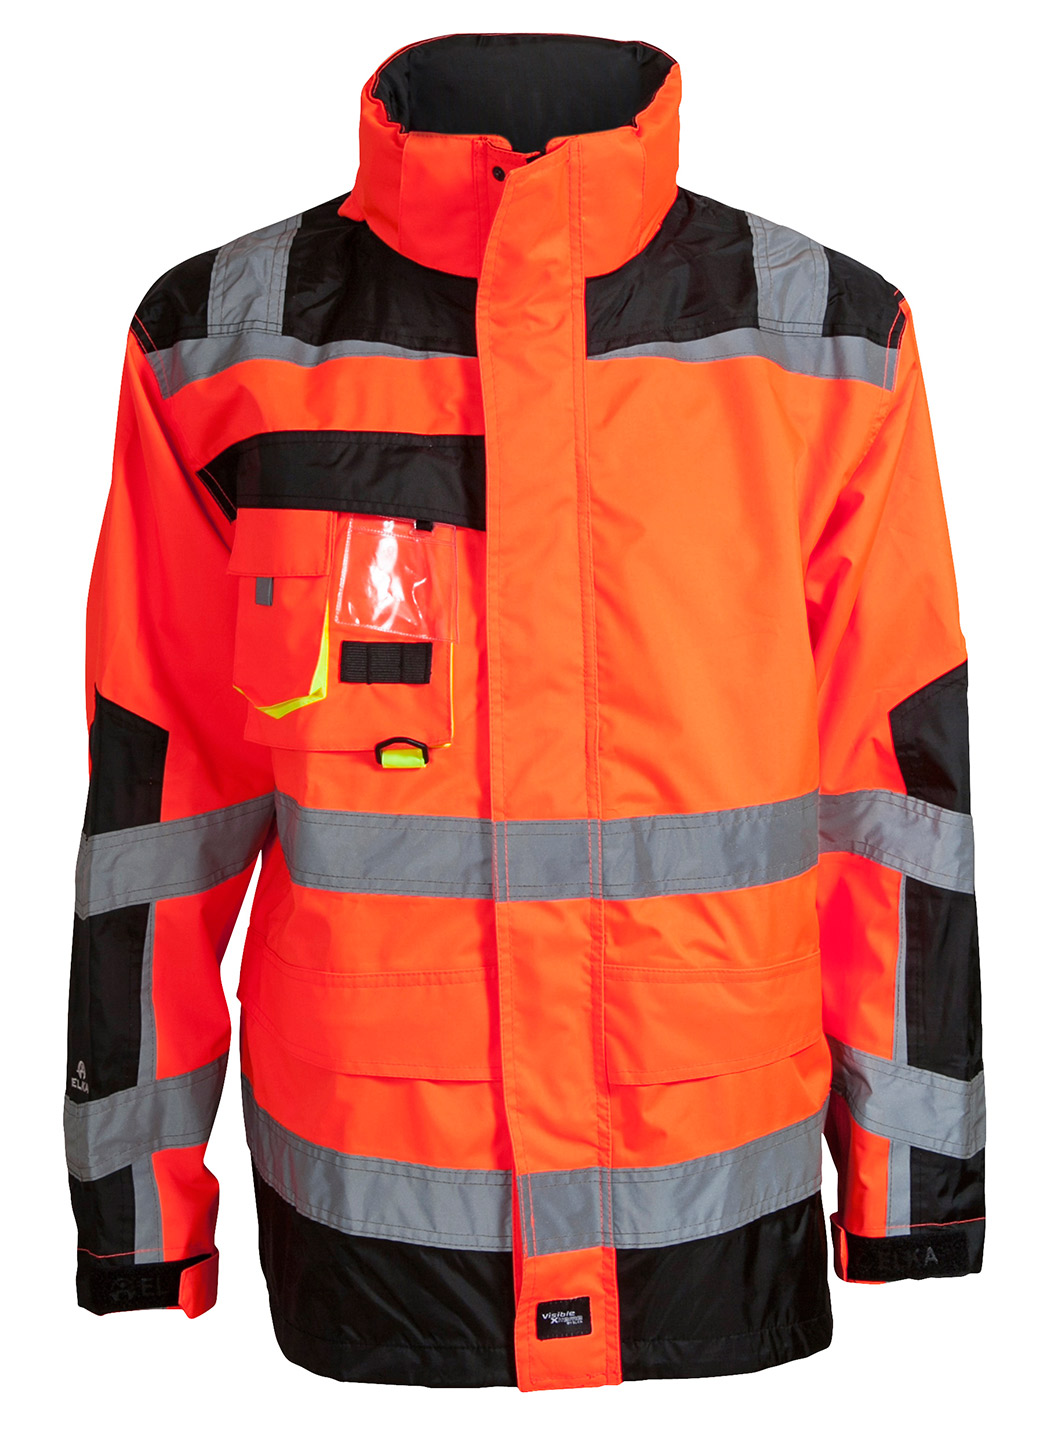 ELKA-Regenschutz, -Regen-Nässe-Wetter-Schutz-Jacke, VISIBLE XTREME, warnorange/schwarz